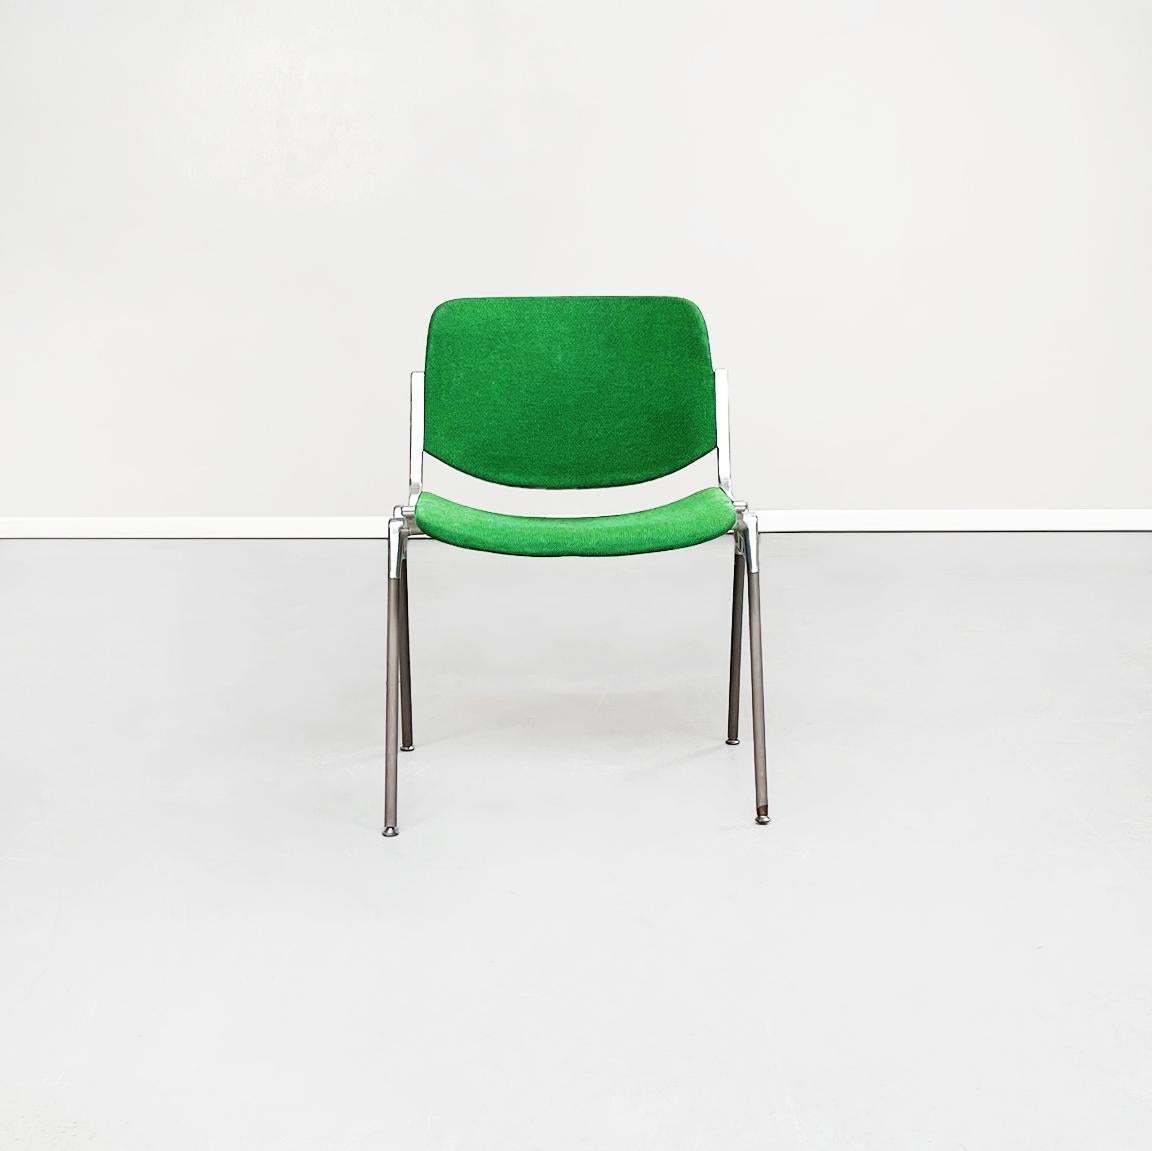 Chaise DSC italienne du milieu du siècle en tissu vert et aluminium par Piretti pour Anonima Castelli, 1965
Chaise modèle DSC avec assise et dossier rectangulaires arrondis, tapissée de tissu vert vif. La structure robuste est en aluminium avec des